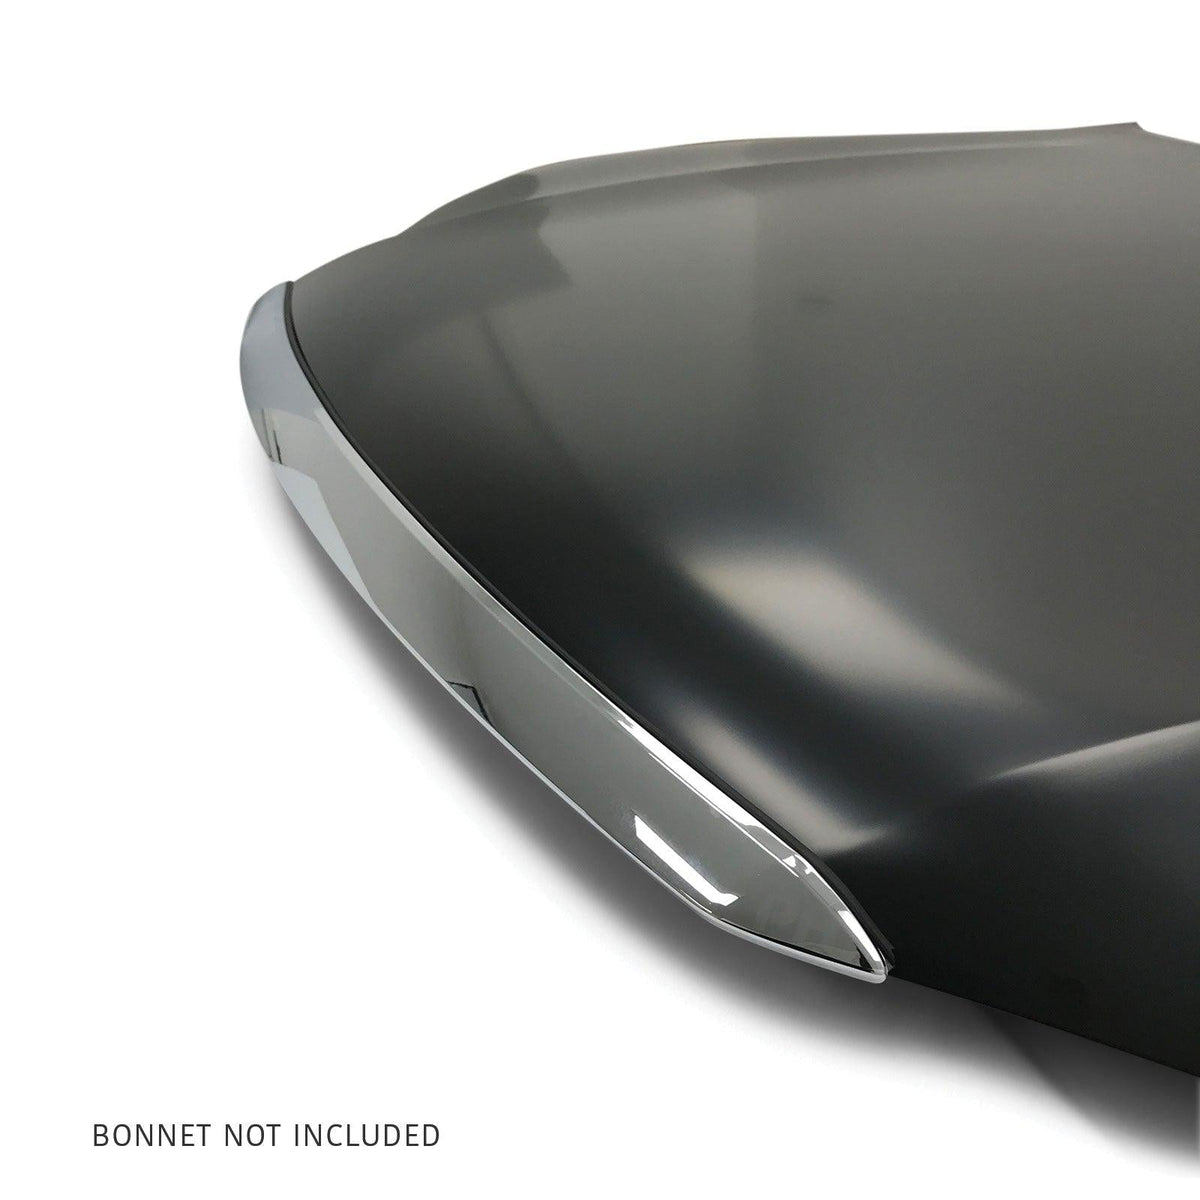 Panel House - Bonnet Hood Trim Mould Chrome Fits Toyota Hilux N80 2015 - 2020 - 4X4OC™ | 4x4 Offroad Centre